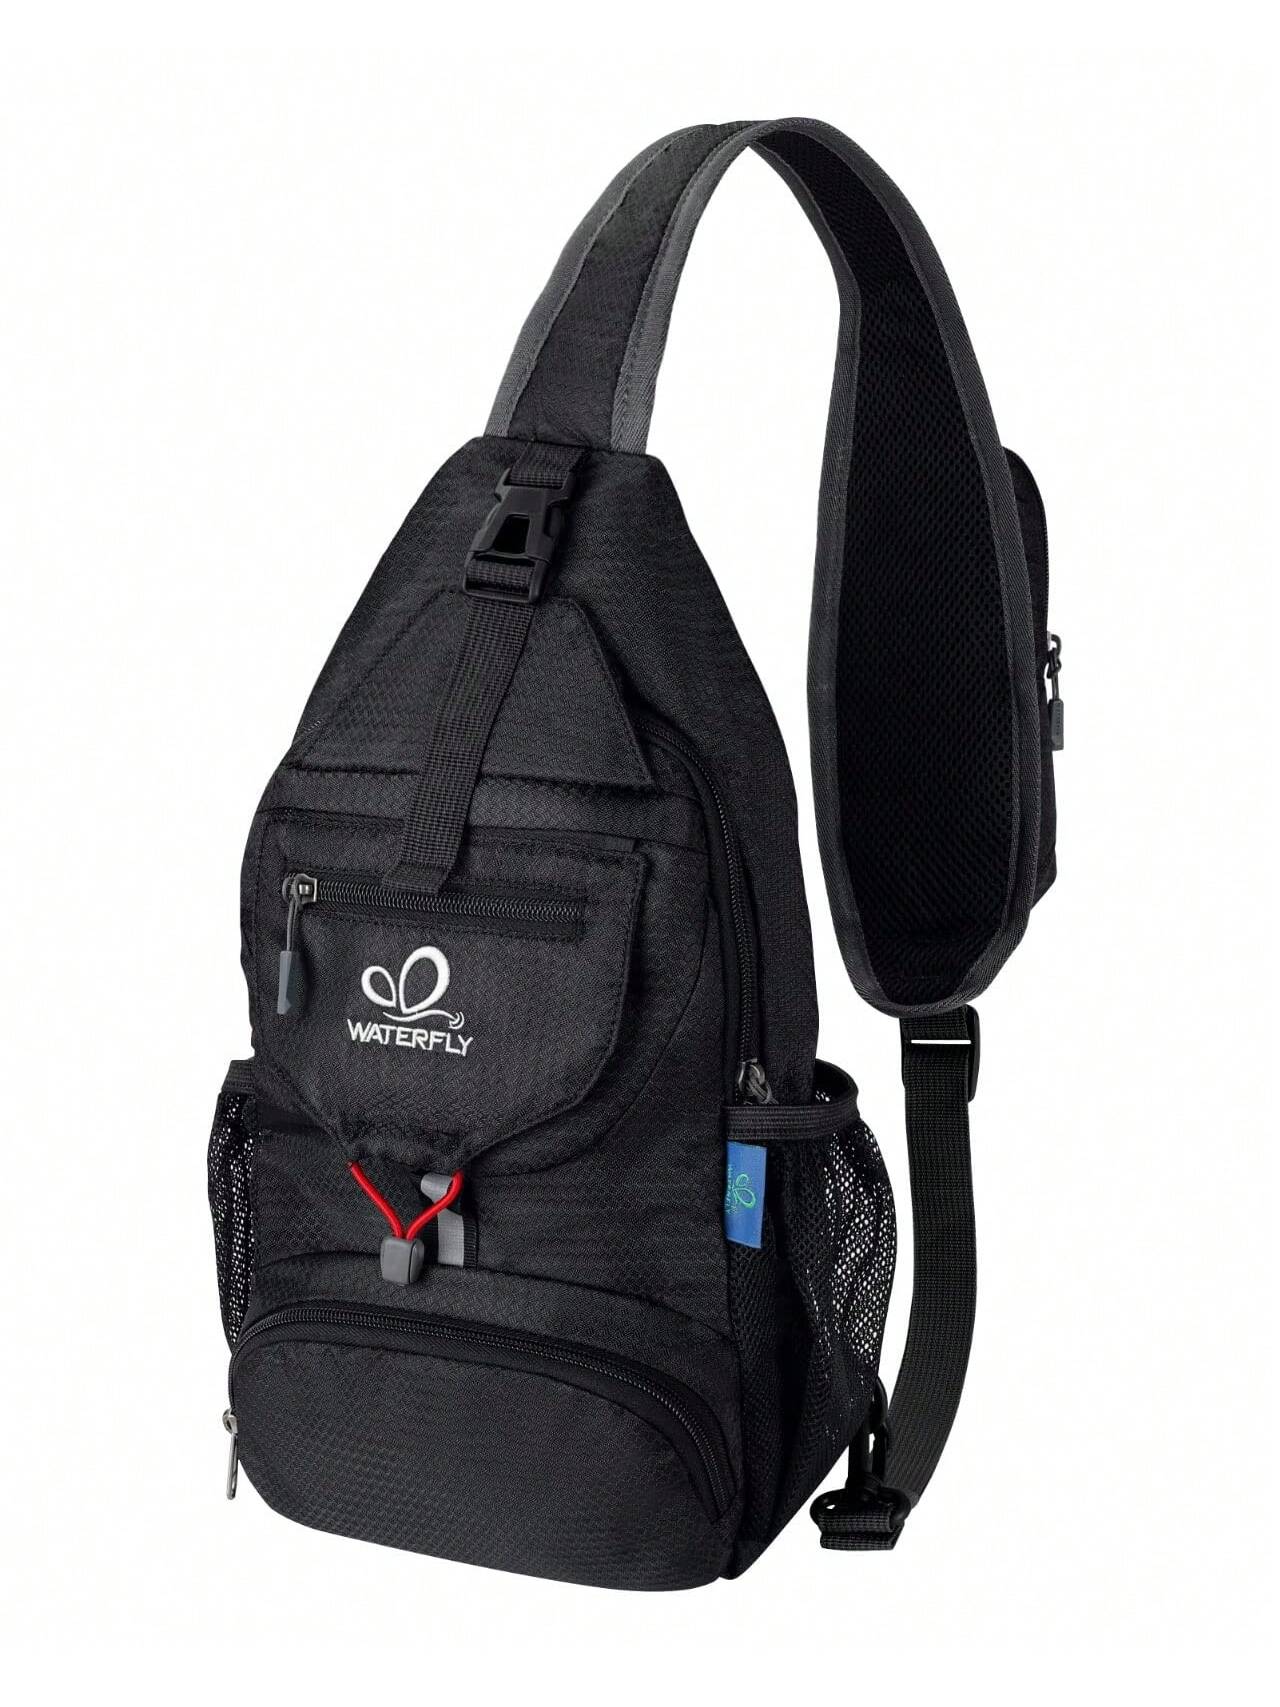 WATERFLY Packable Маленький рюкзак через плечо для мужчин и женщин Складная сумка через плечо на груди Дневной рюкзак для пеших прогулок и путешествий, черный красная нагрудная сумка через плечо с двойным быком мужской крутой рюкзак на плечо для походов